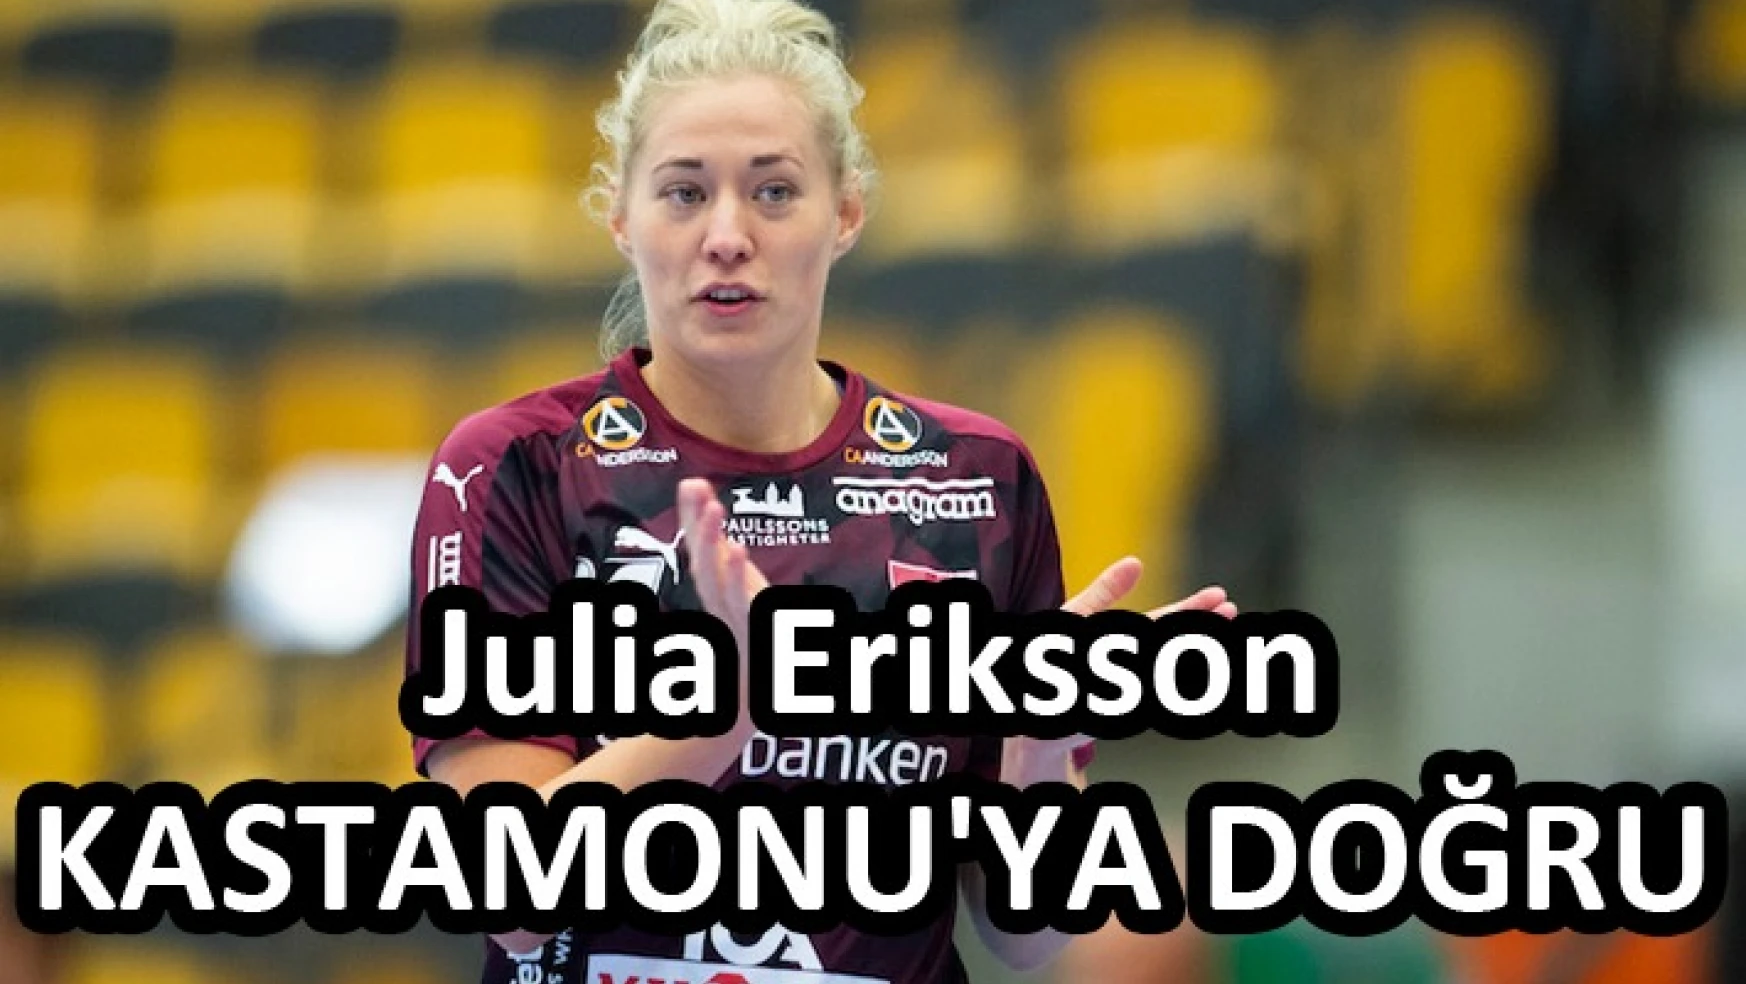 Julia Eriksson KASTAMONU’ya doğru